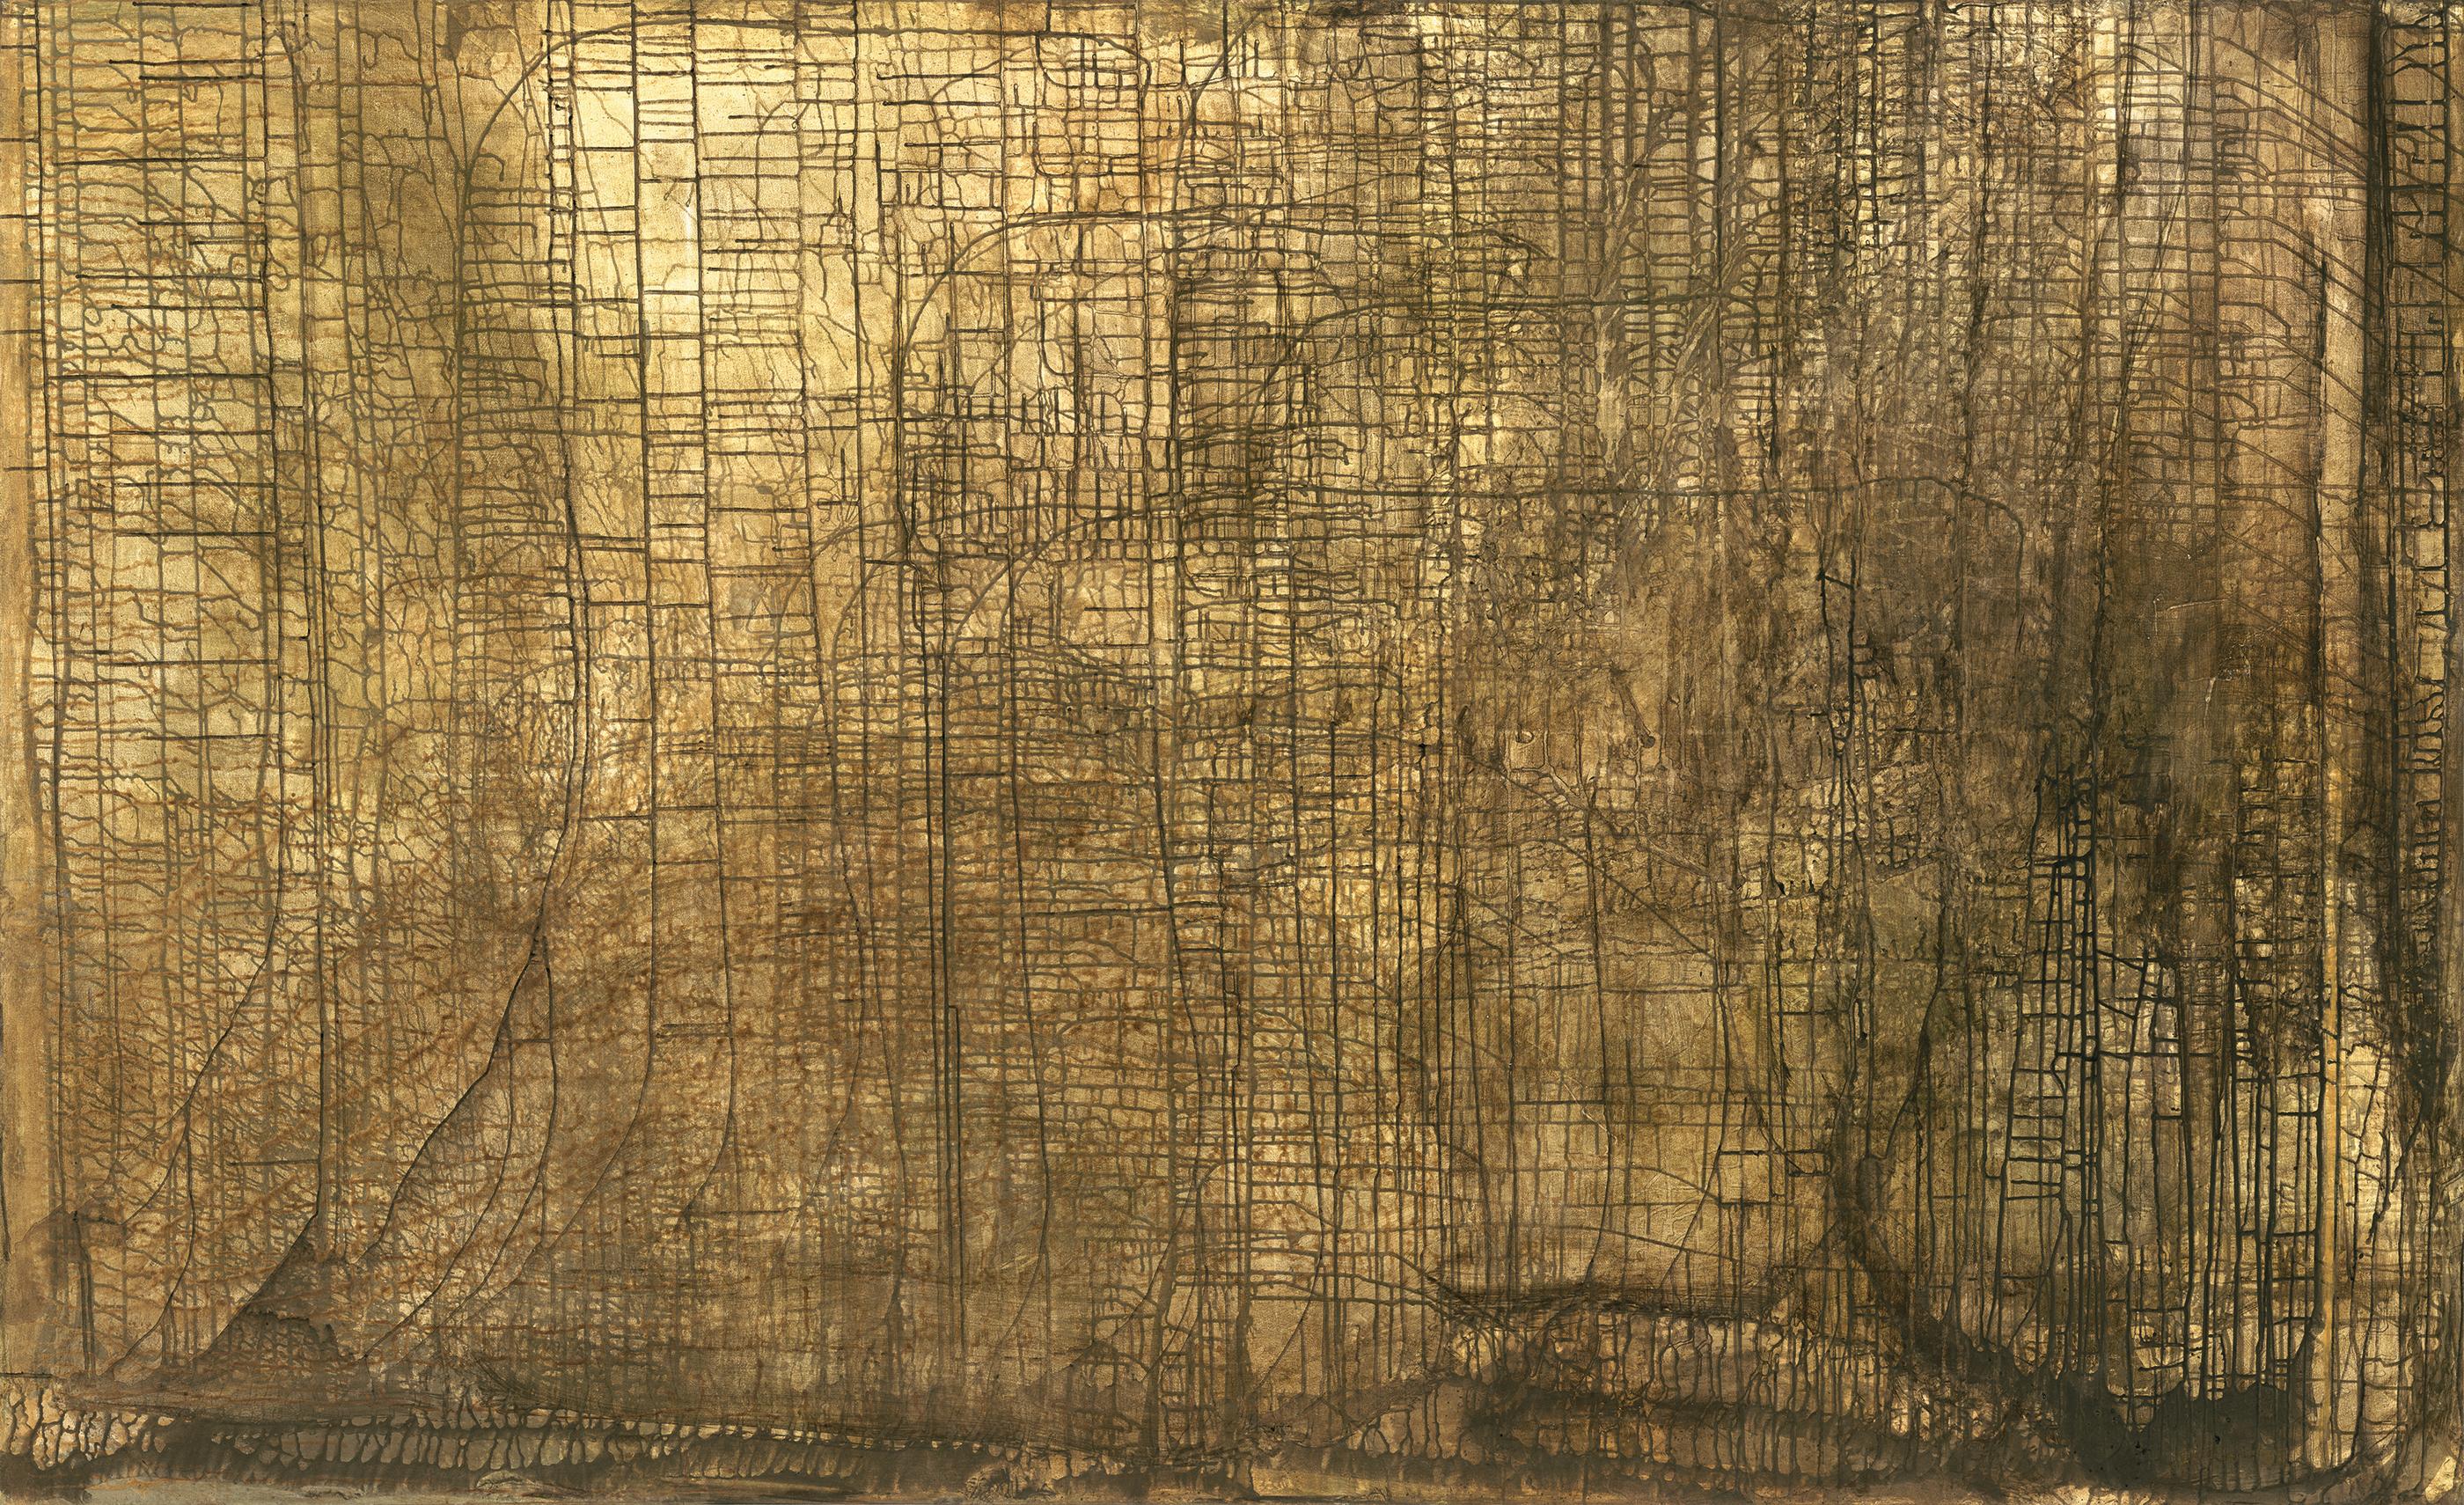 Zion 2 est une nouvelle peinture abstraite sur toile de grande taille réalisée par Debra Ferrari, avec des couches de beiges doux, de bruns, de jaunes crémeux et un soupçon de vert forêt profond enfouis dans les nombreuses et multiples couches de